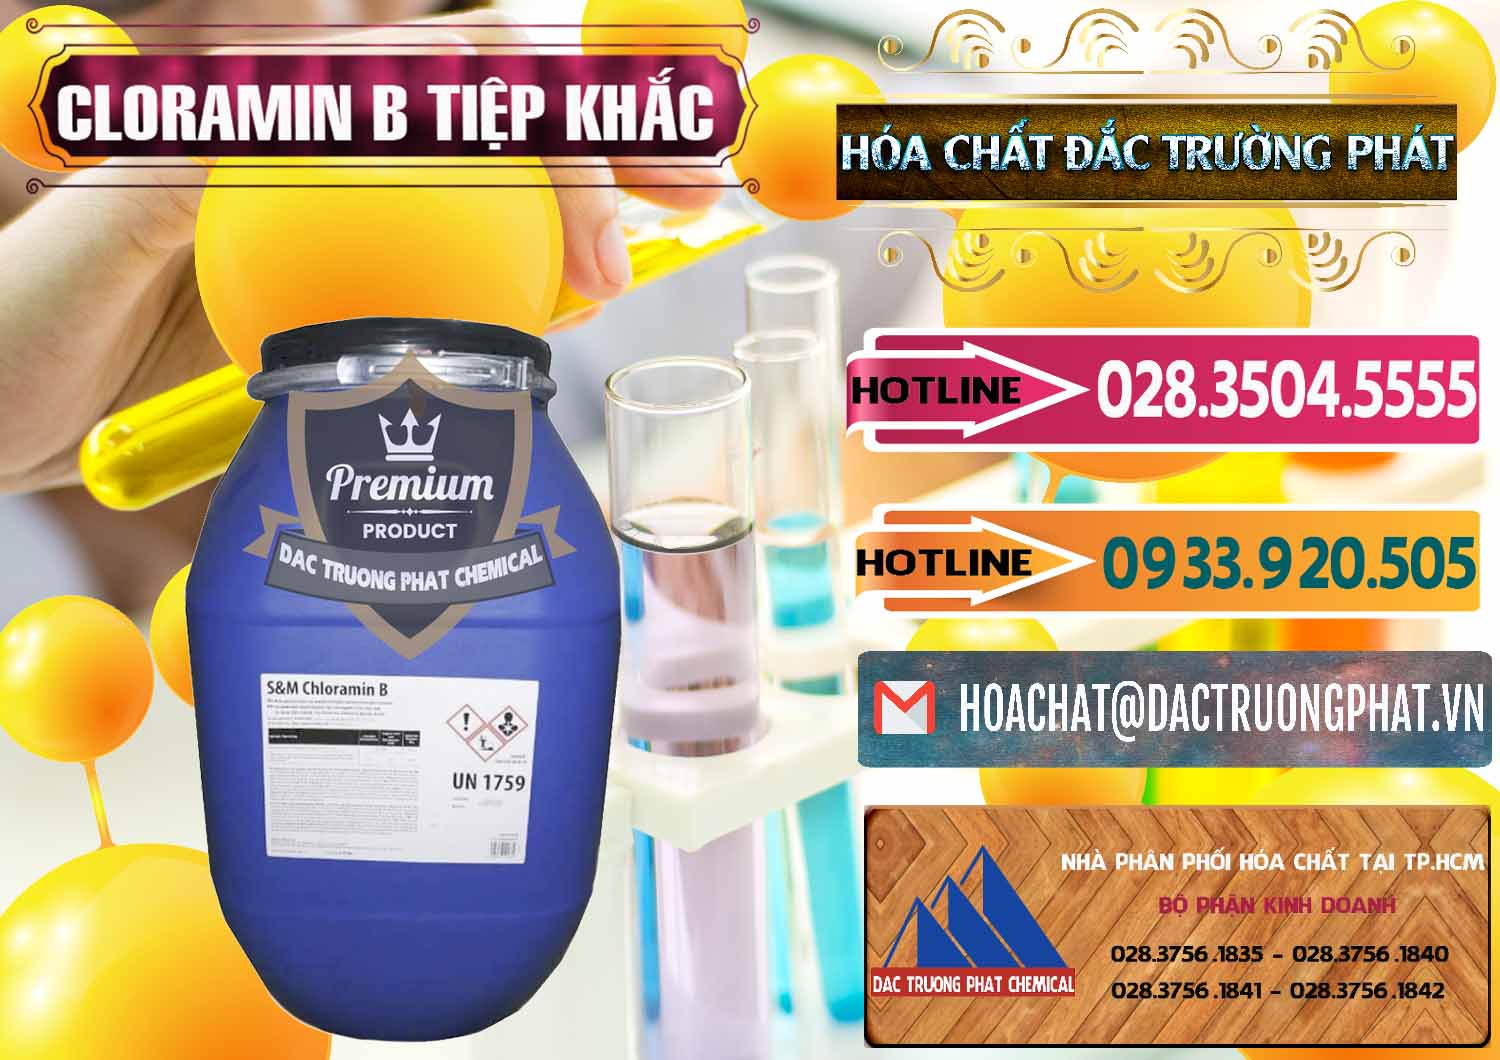 Cung cấp và bán Cloramin B Cộng Hòa Séc Tiệp Khắc Czech Republic - 0299 - Cty chuyên nhập khẩu & phân phối hóa chất tại TP.HCM - dactruongphat.vn